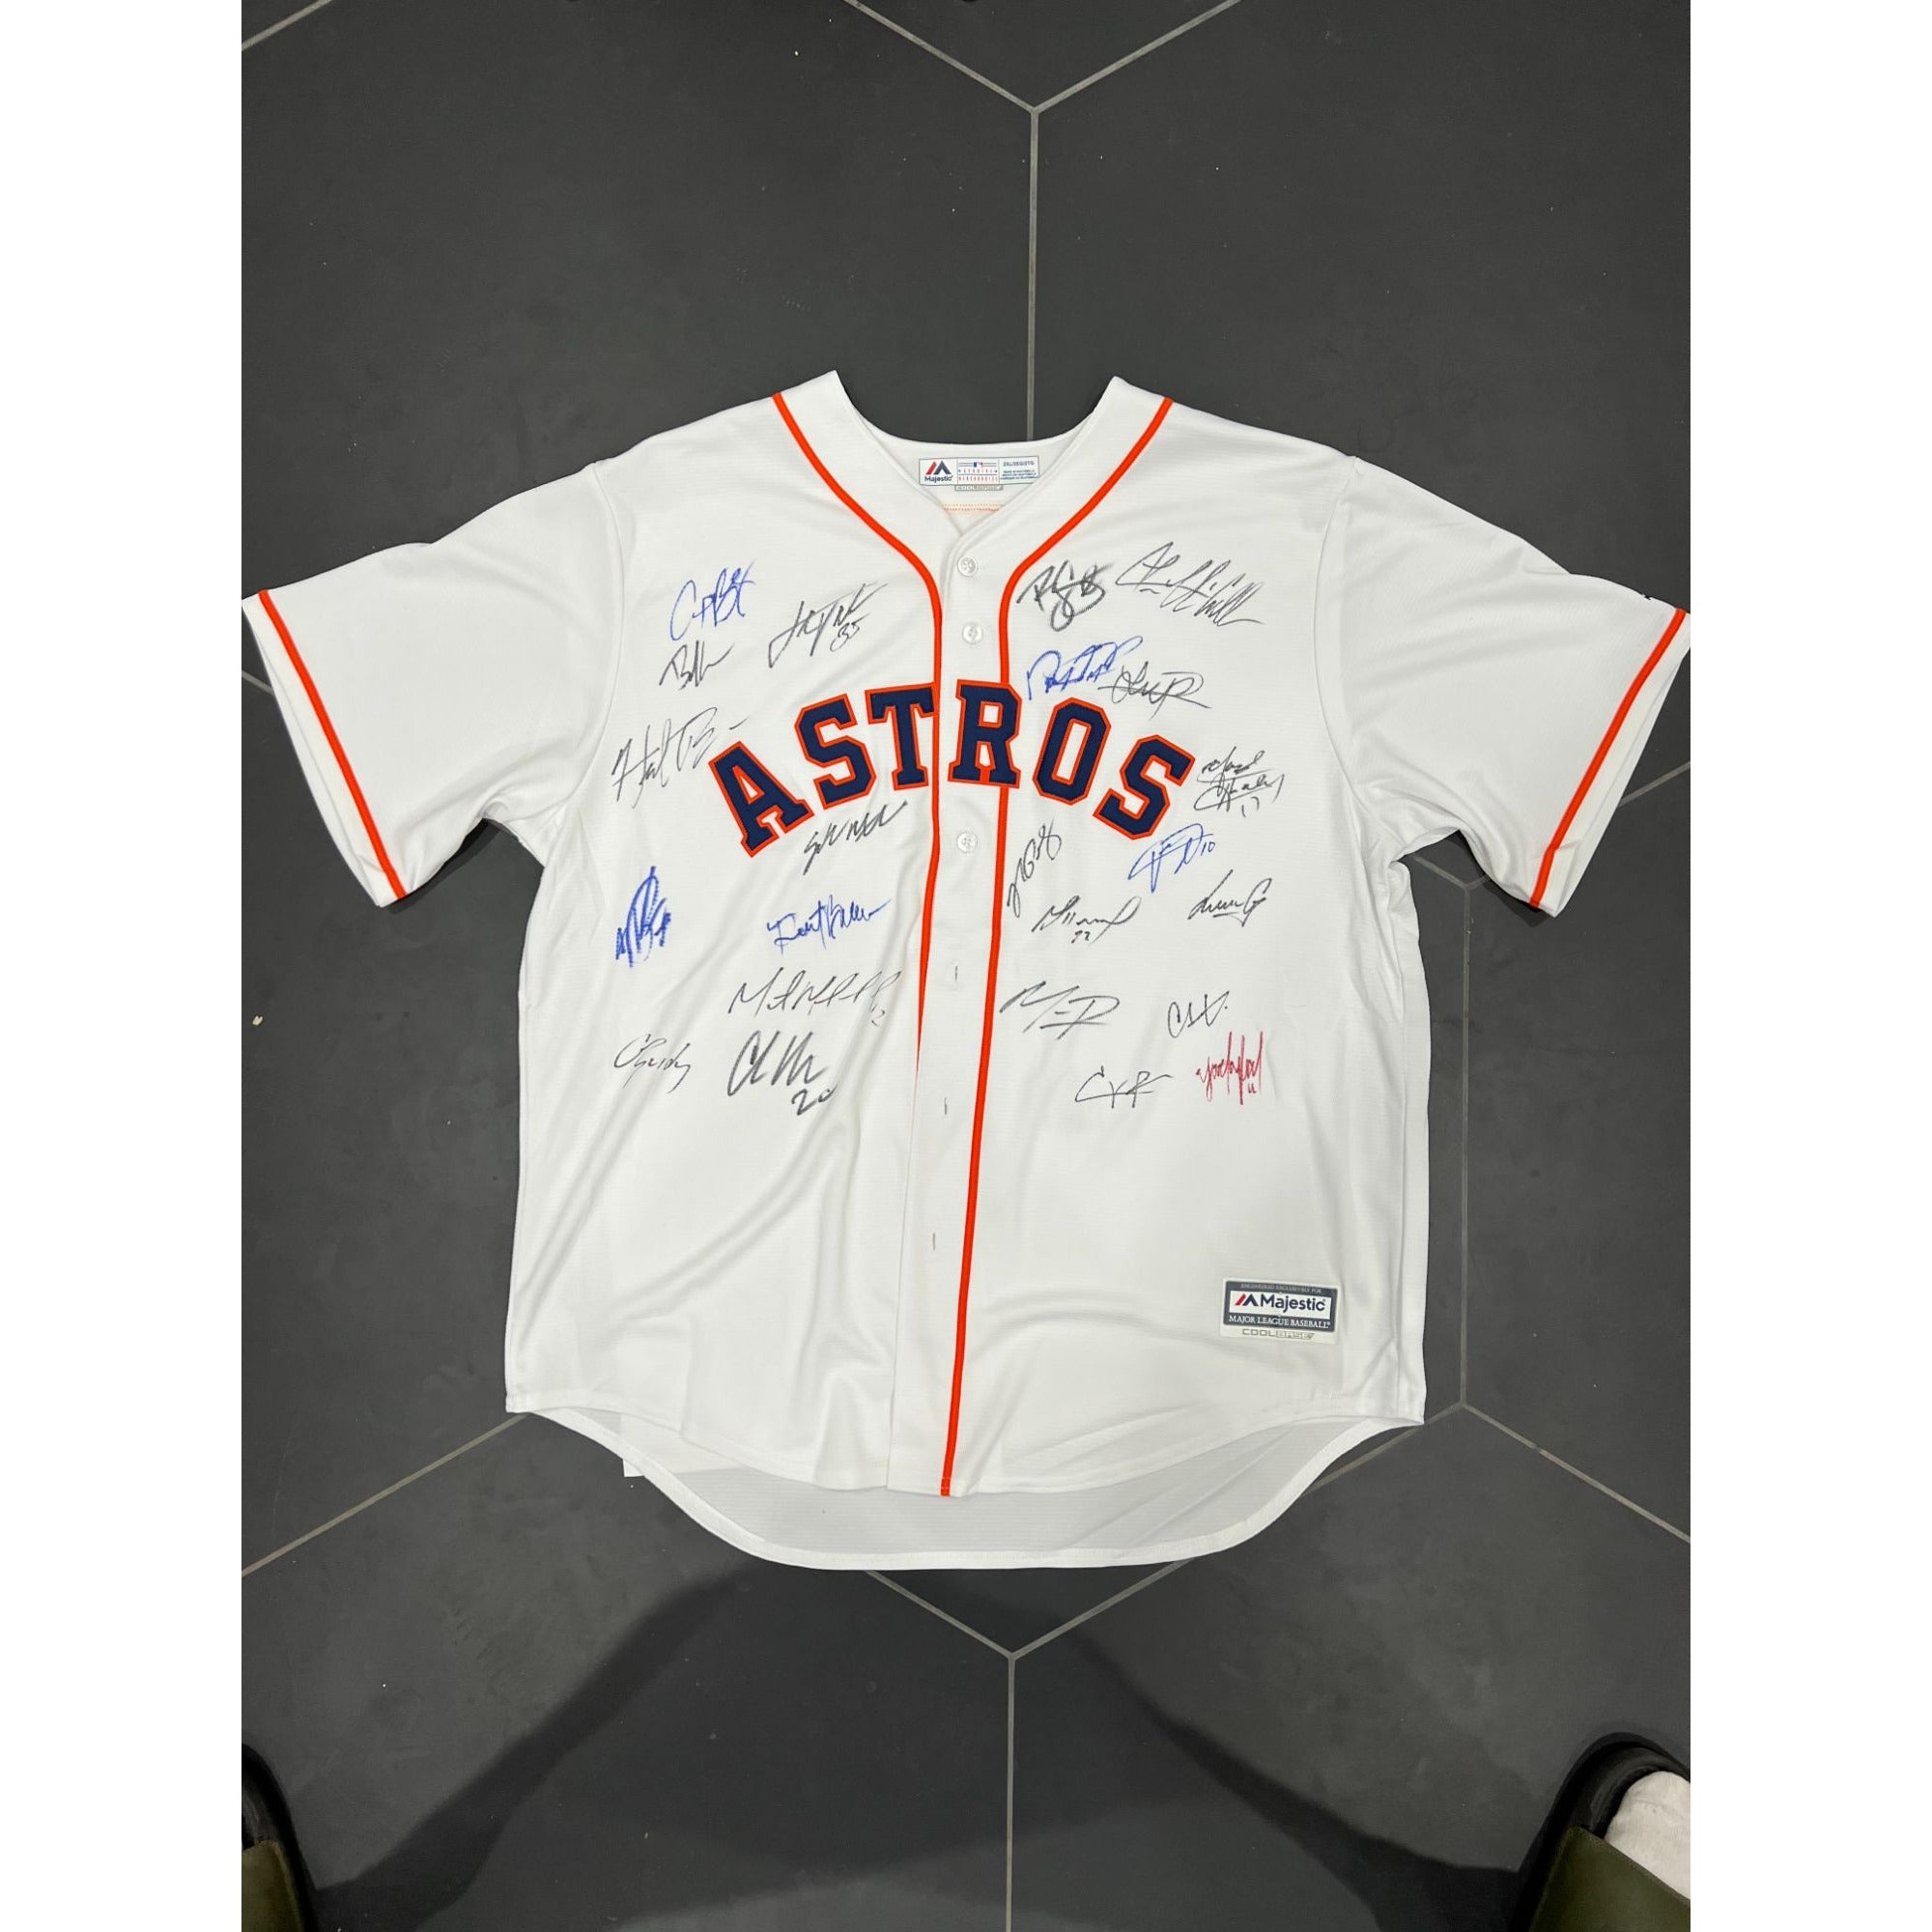 Houston Astros Baseball 2022 Framber Valdez 2022 Graphic T-Shirt - Ink In  Action